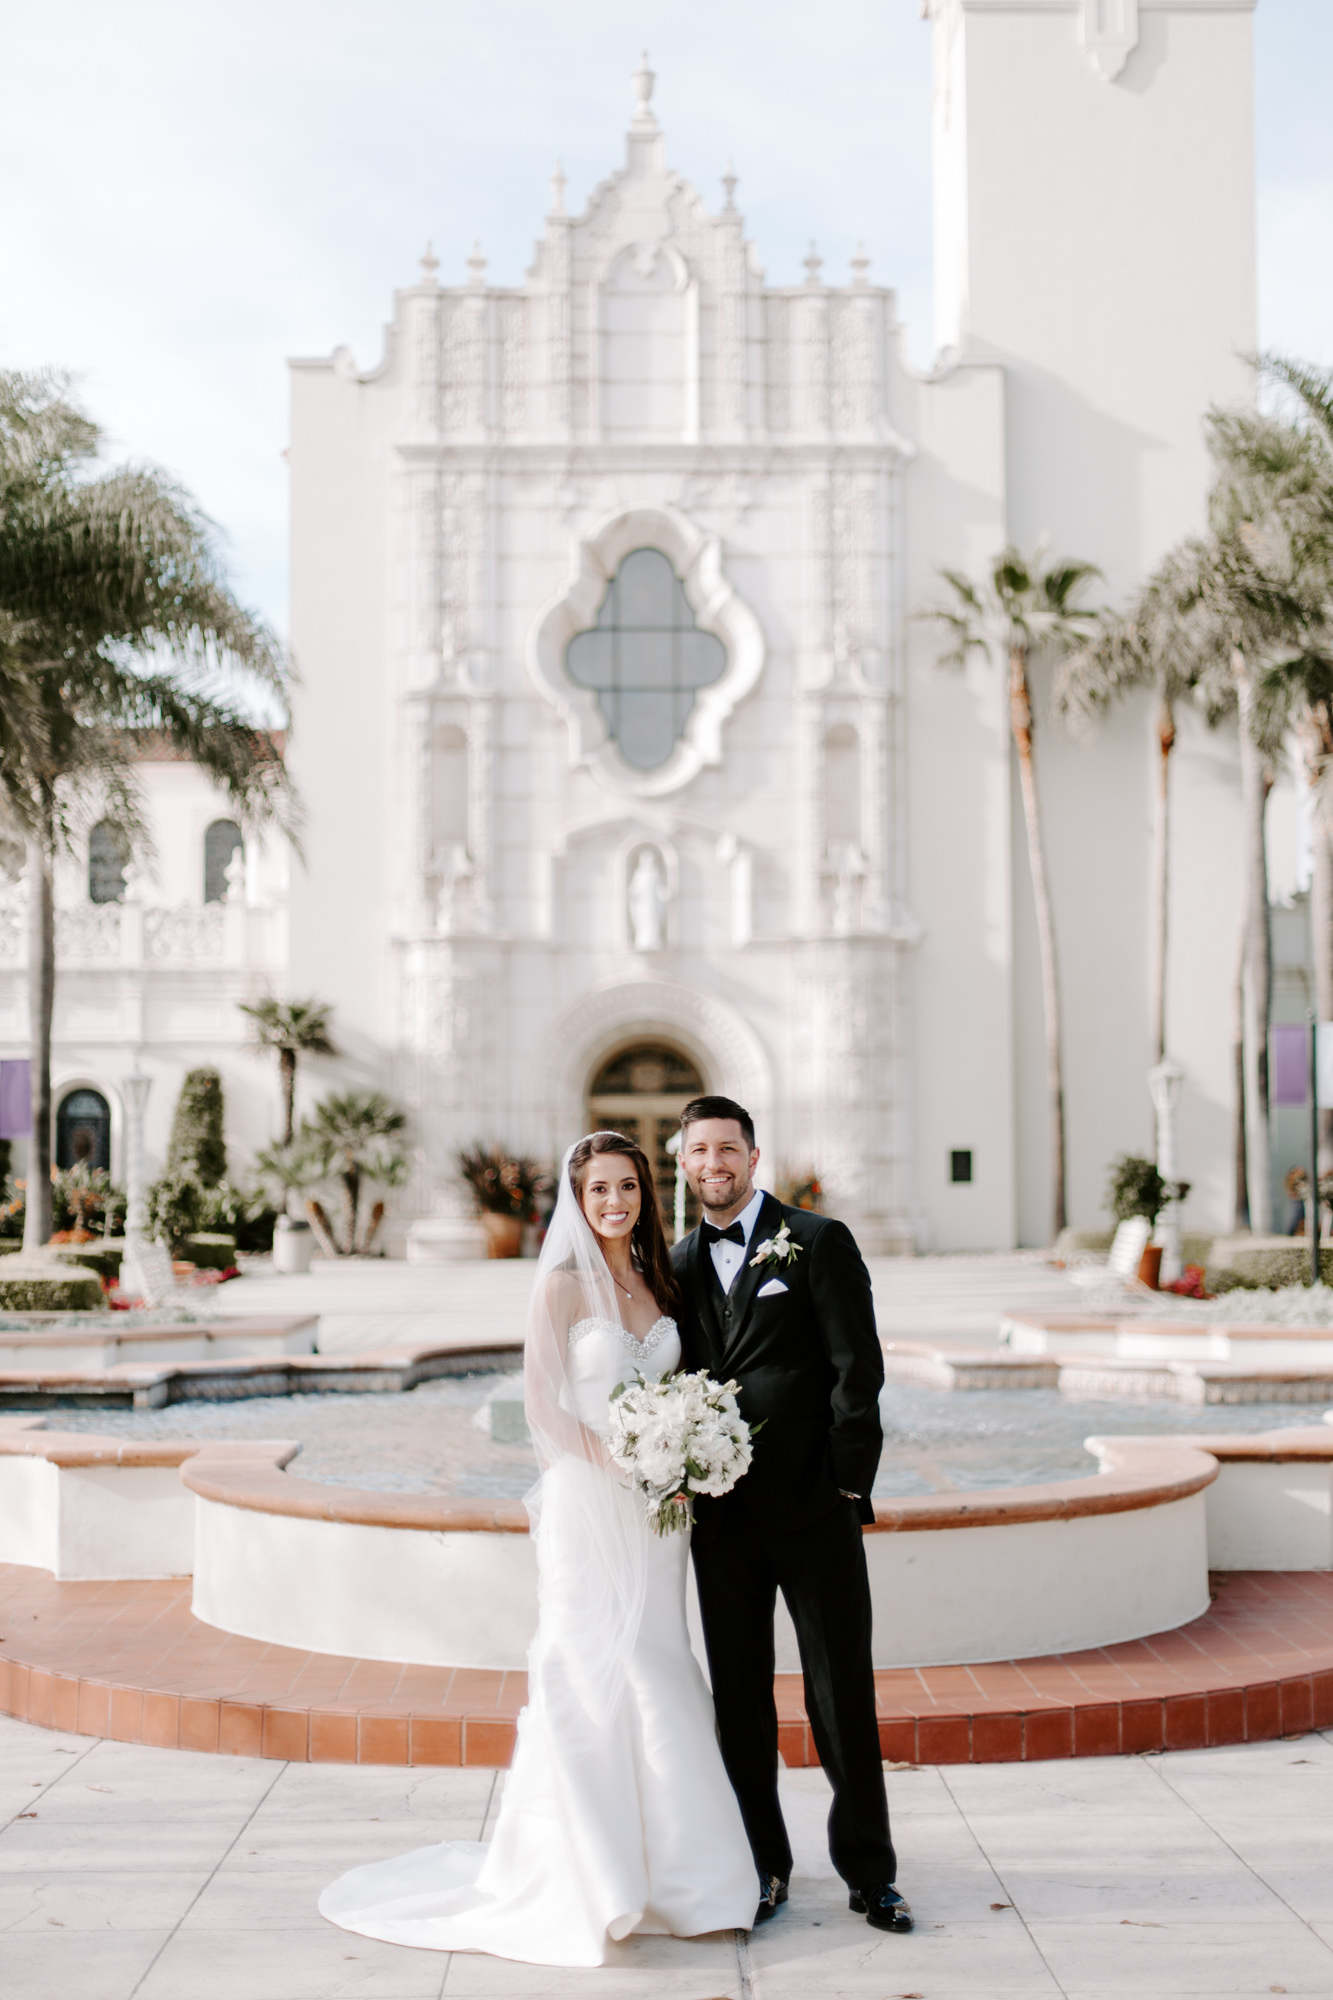 USD Immaculata Church, San Diego wedding,  San Diego Wedding Photography, San Diego Wedding Photographer, Immaculata wedding, San Diego Wedding Venue, USD Wedding, California Wedding Photographer